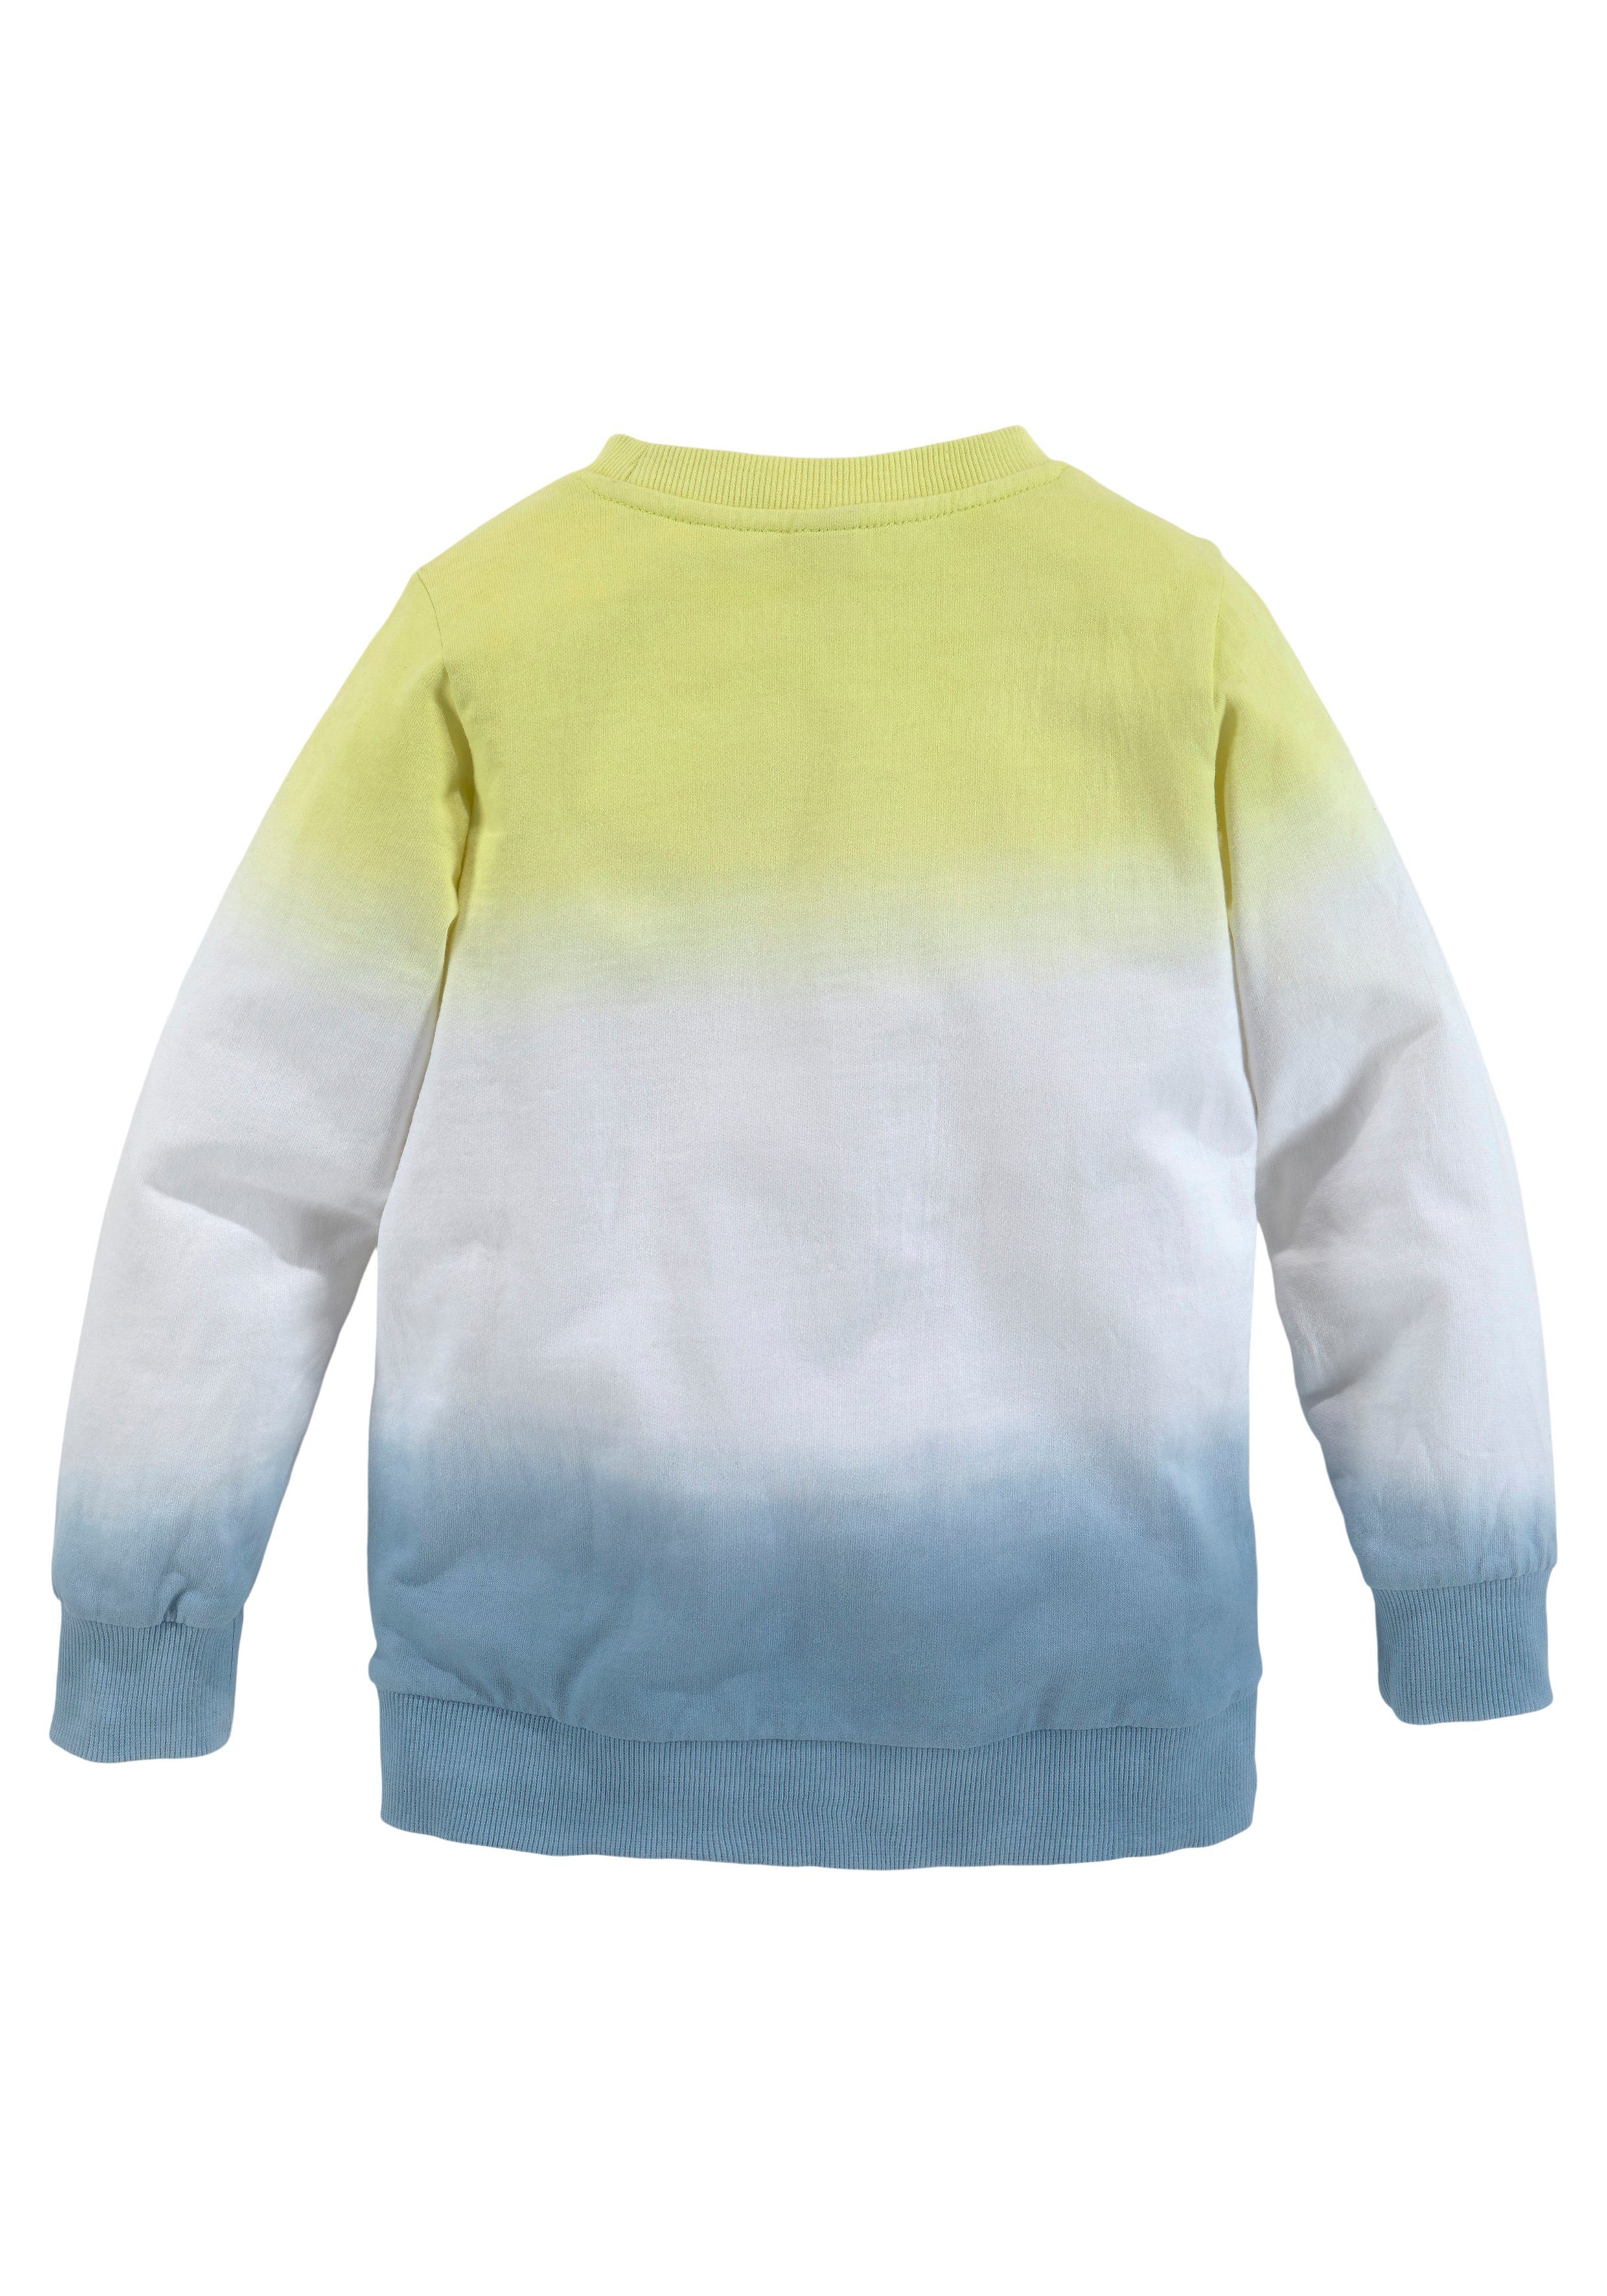 Kinder Kids (Gr. 92 - 146) Bench. Sweatshirt mit Farbverlauf